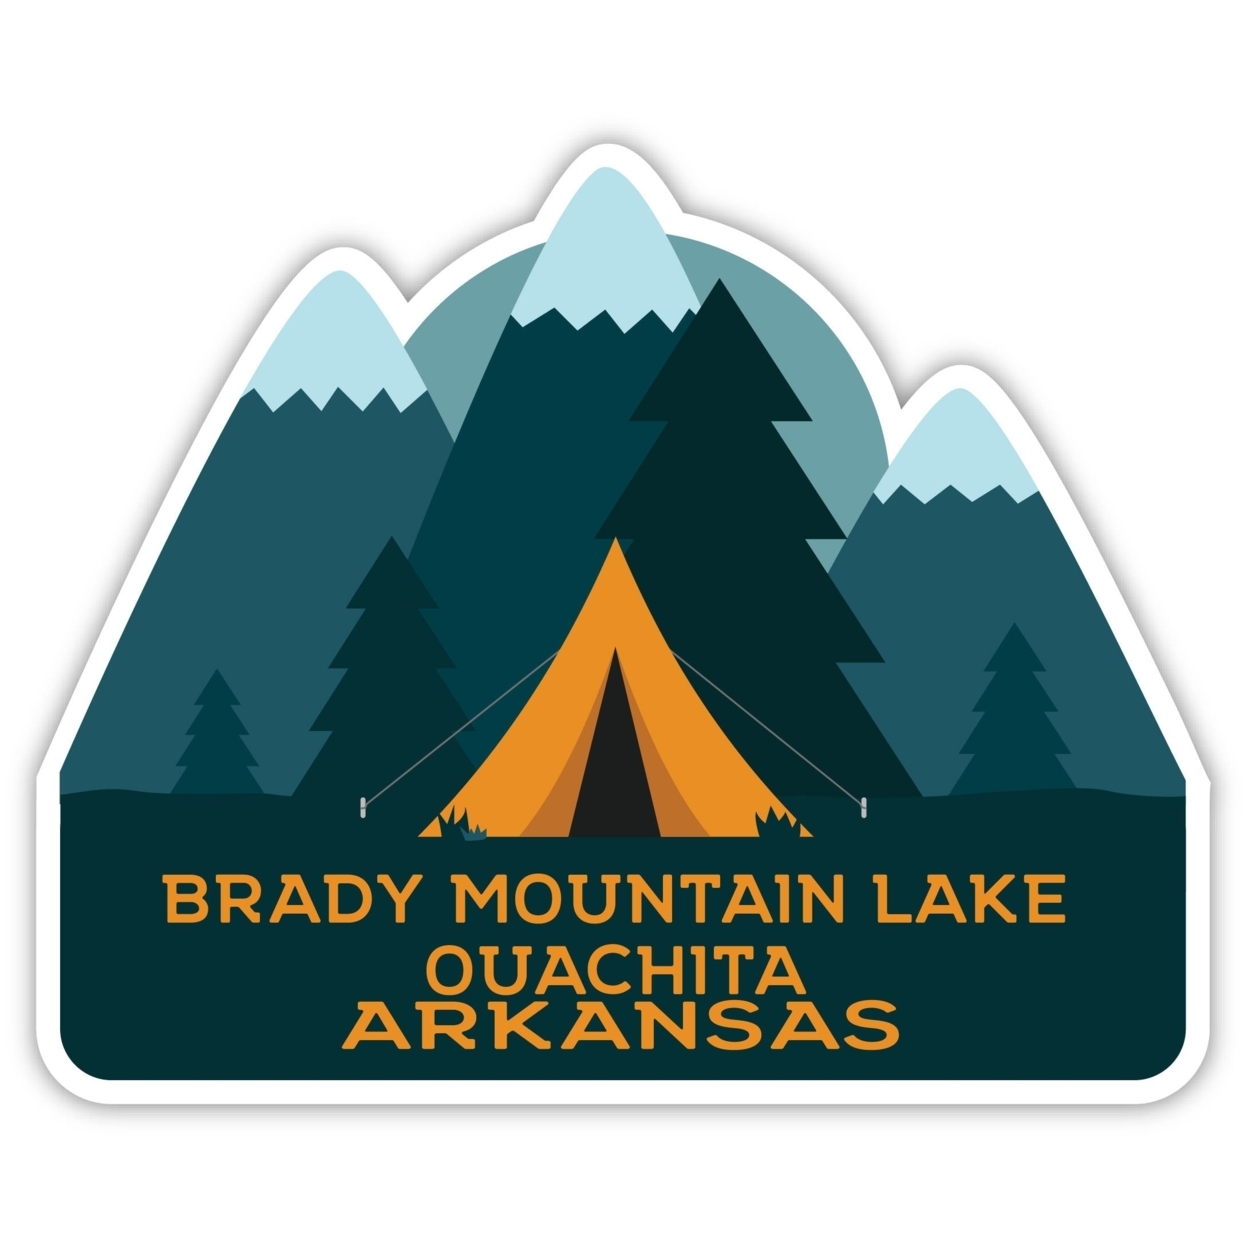 Brady Mountain Lake Ouachita Arkansas Souvenir Decorative Stickers (Choose Theme And Size) - Single Unit, 2-Inch, Bear